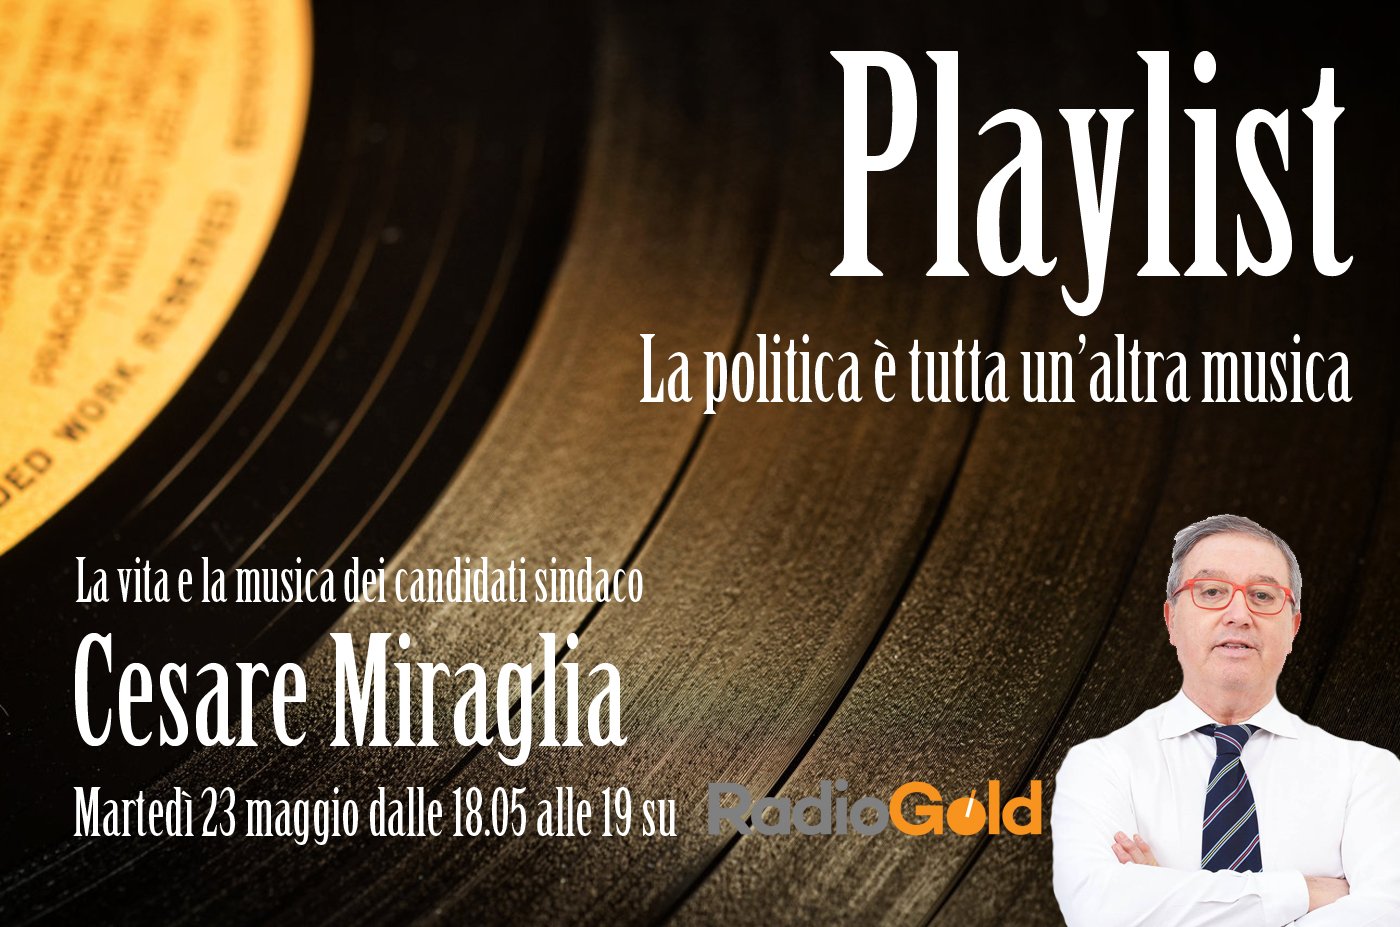 La storia del candidato Cesare Miraglia attraverso 10 brani